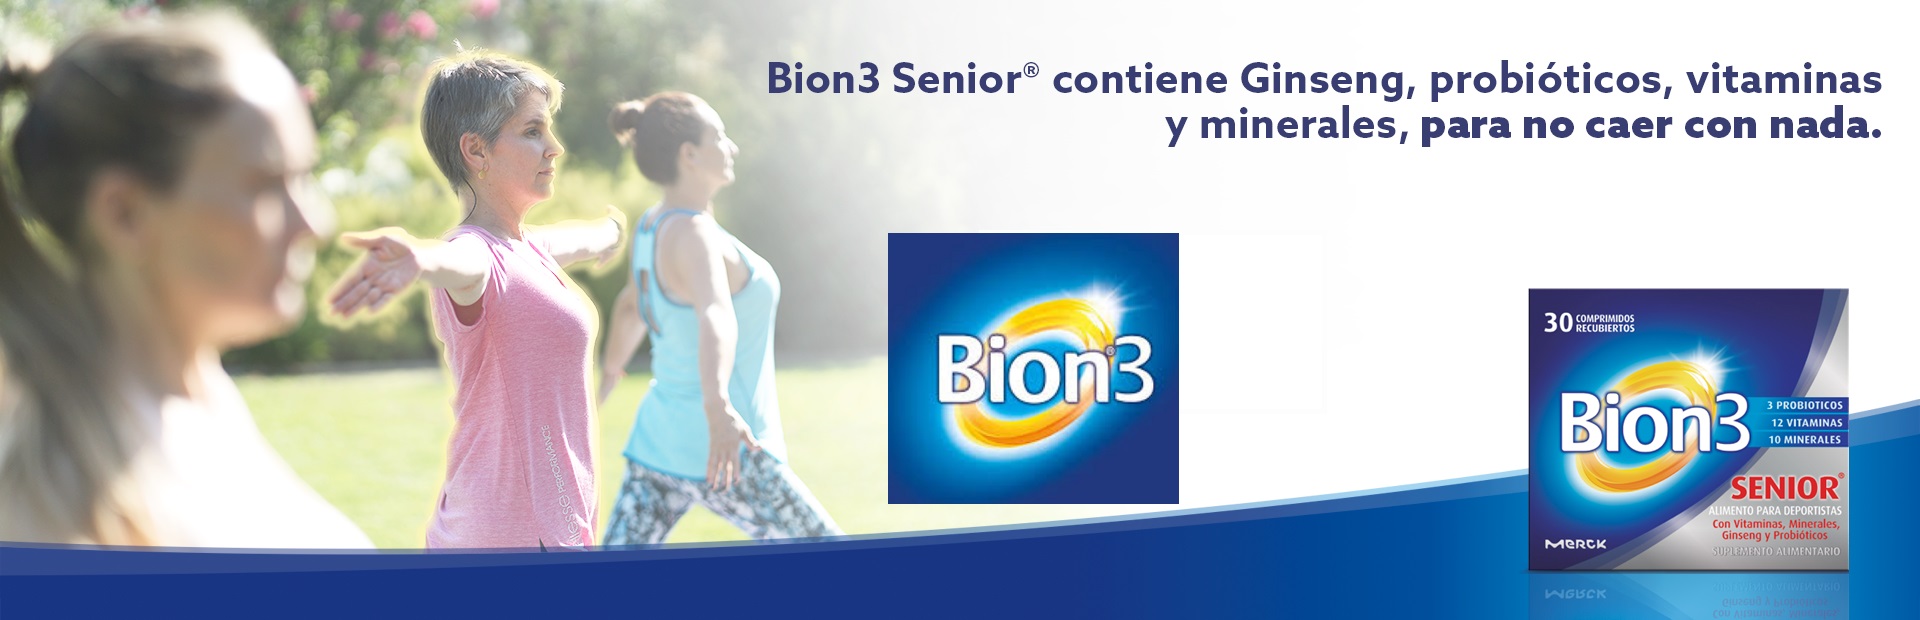 Complément alimentaire Bion3 Senior